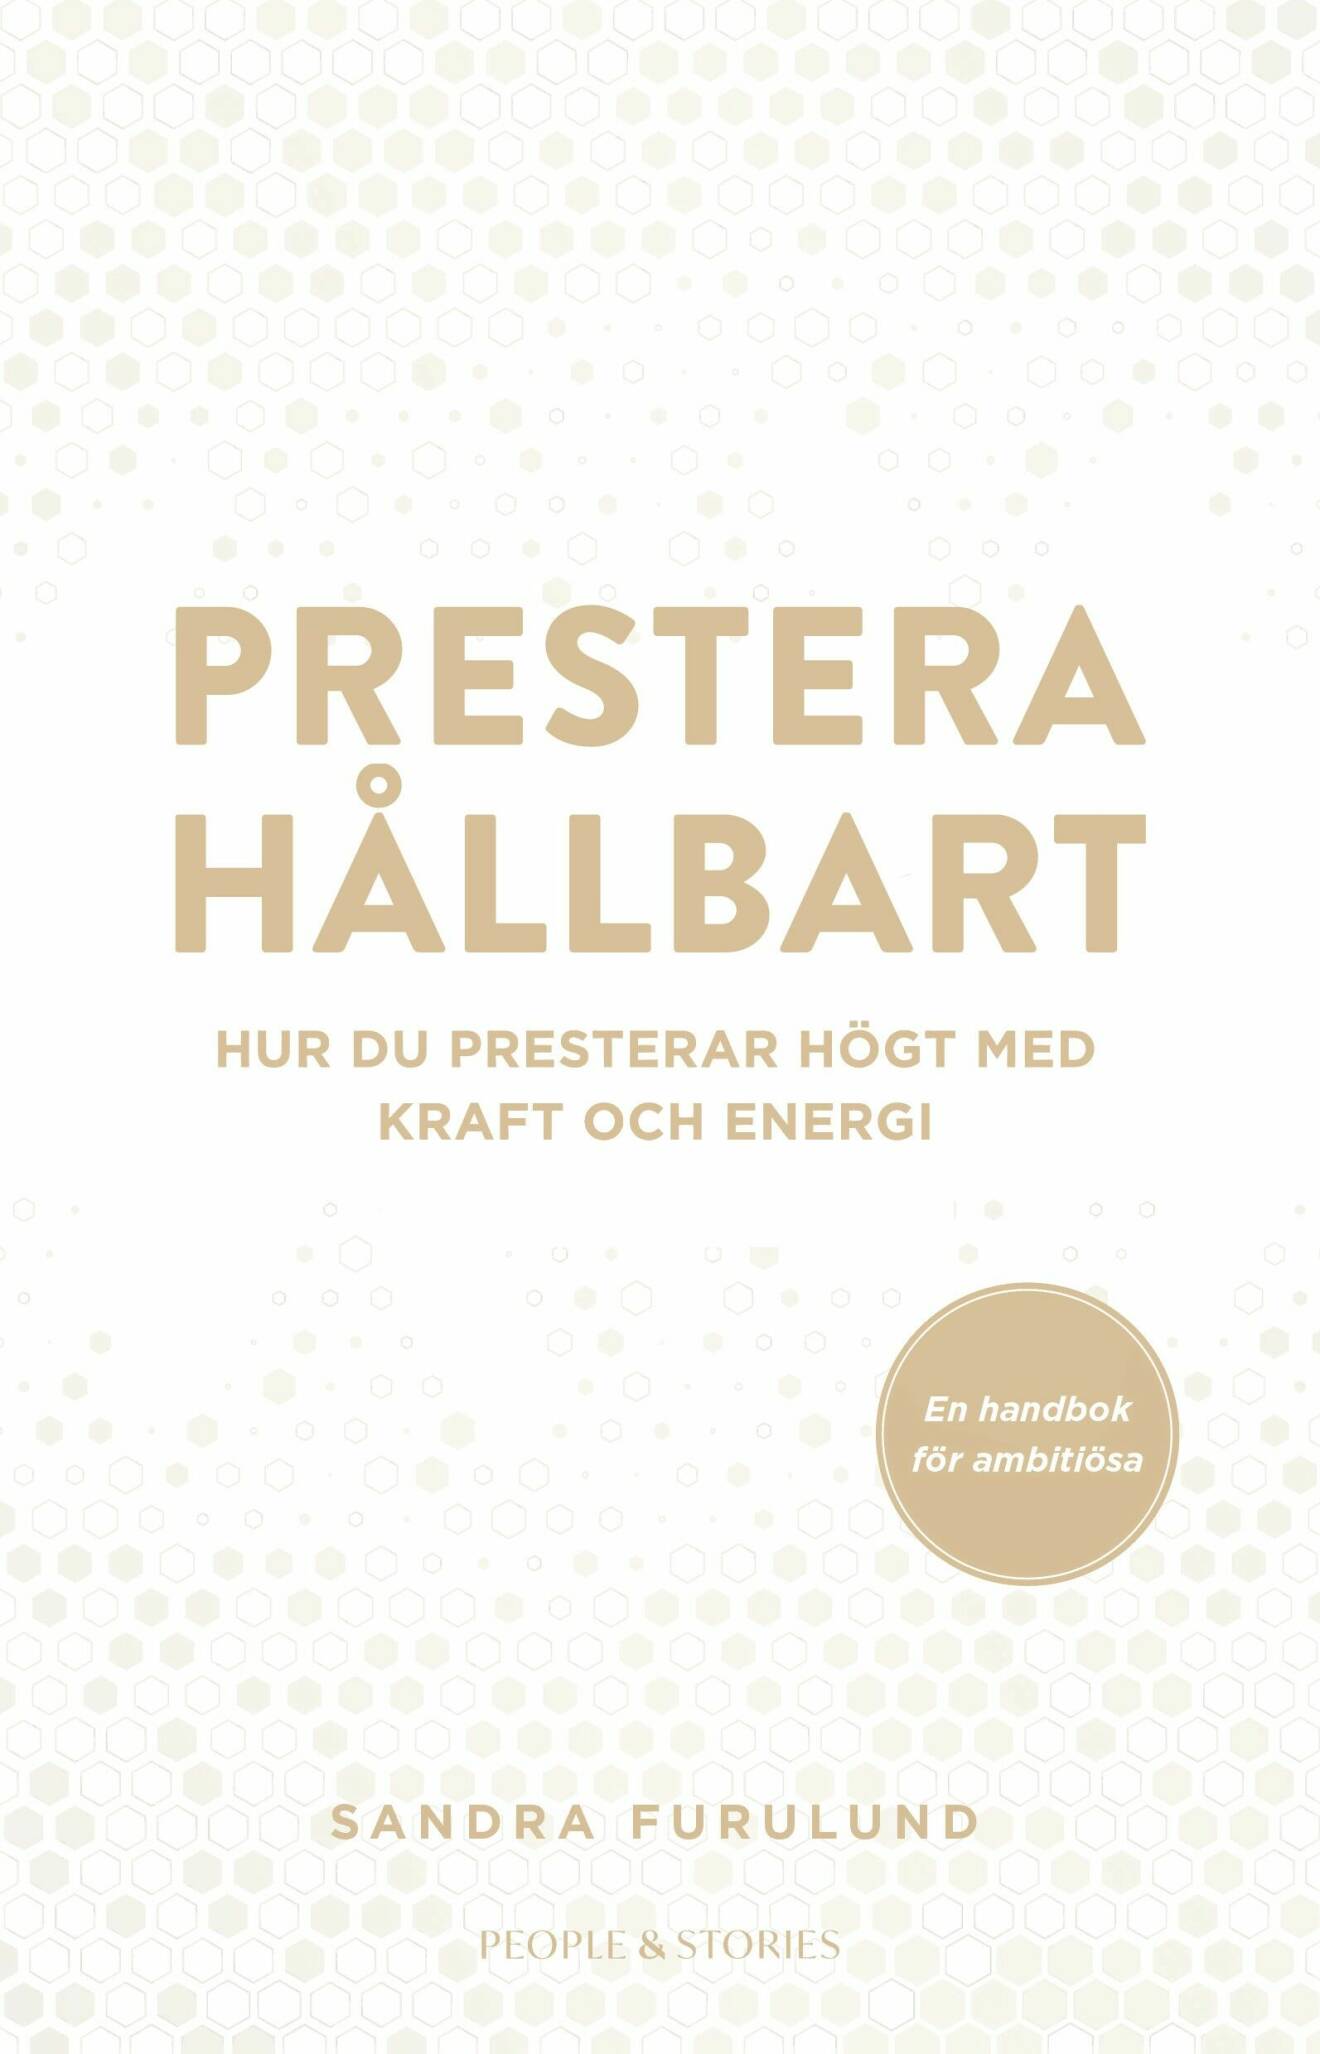 Sandra Furulund bok Prestera hållbart. Hur du presterar högt med kraft och energi, recension